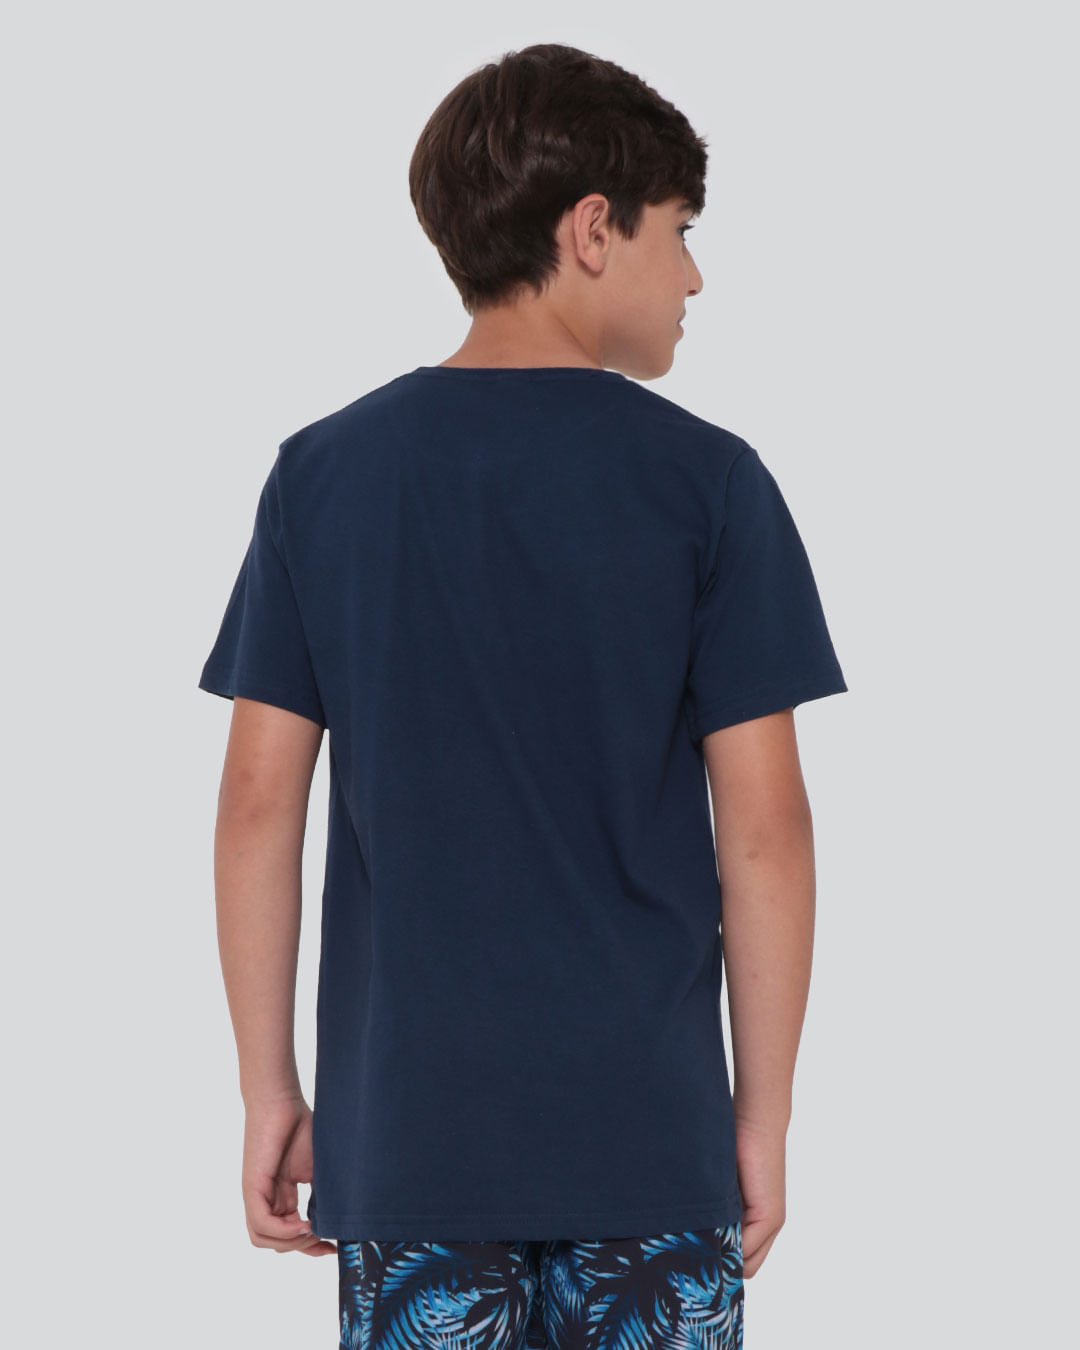 Camiseta-Juvenil-California-Marinho